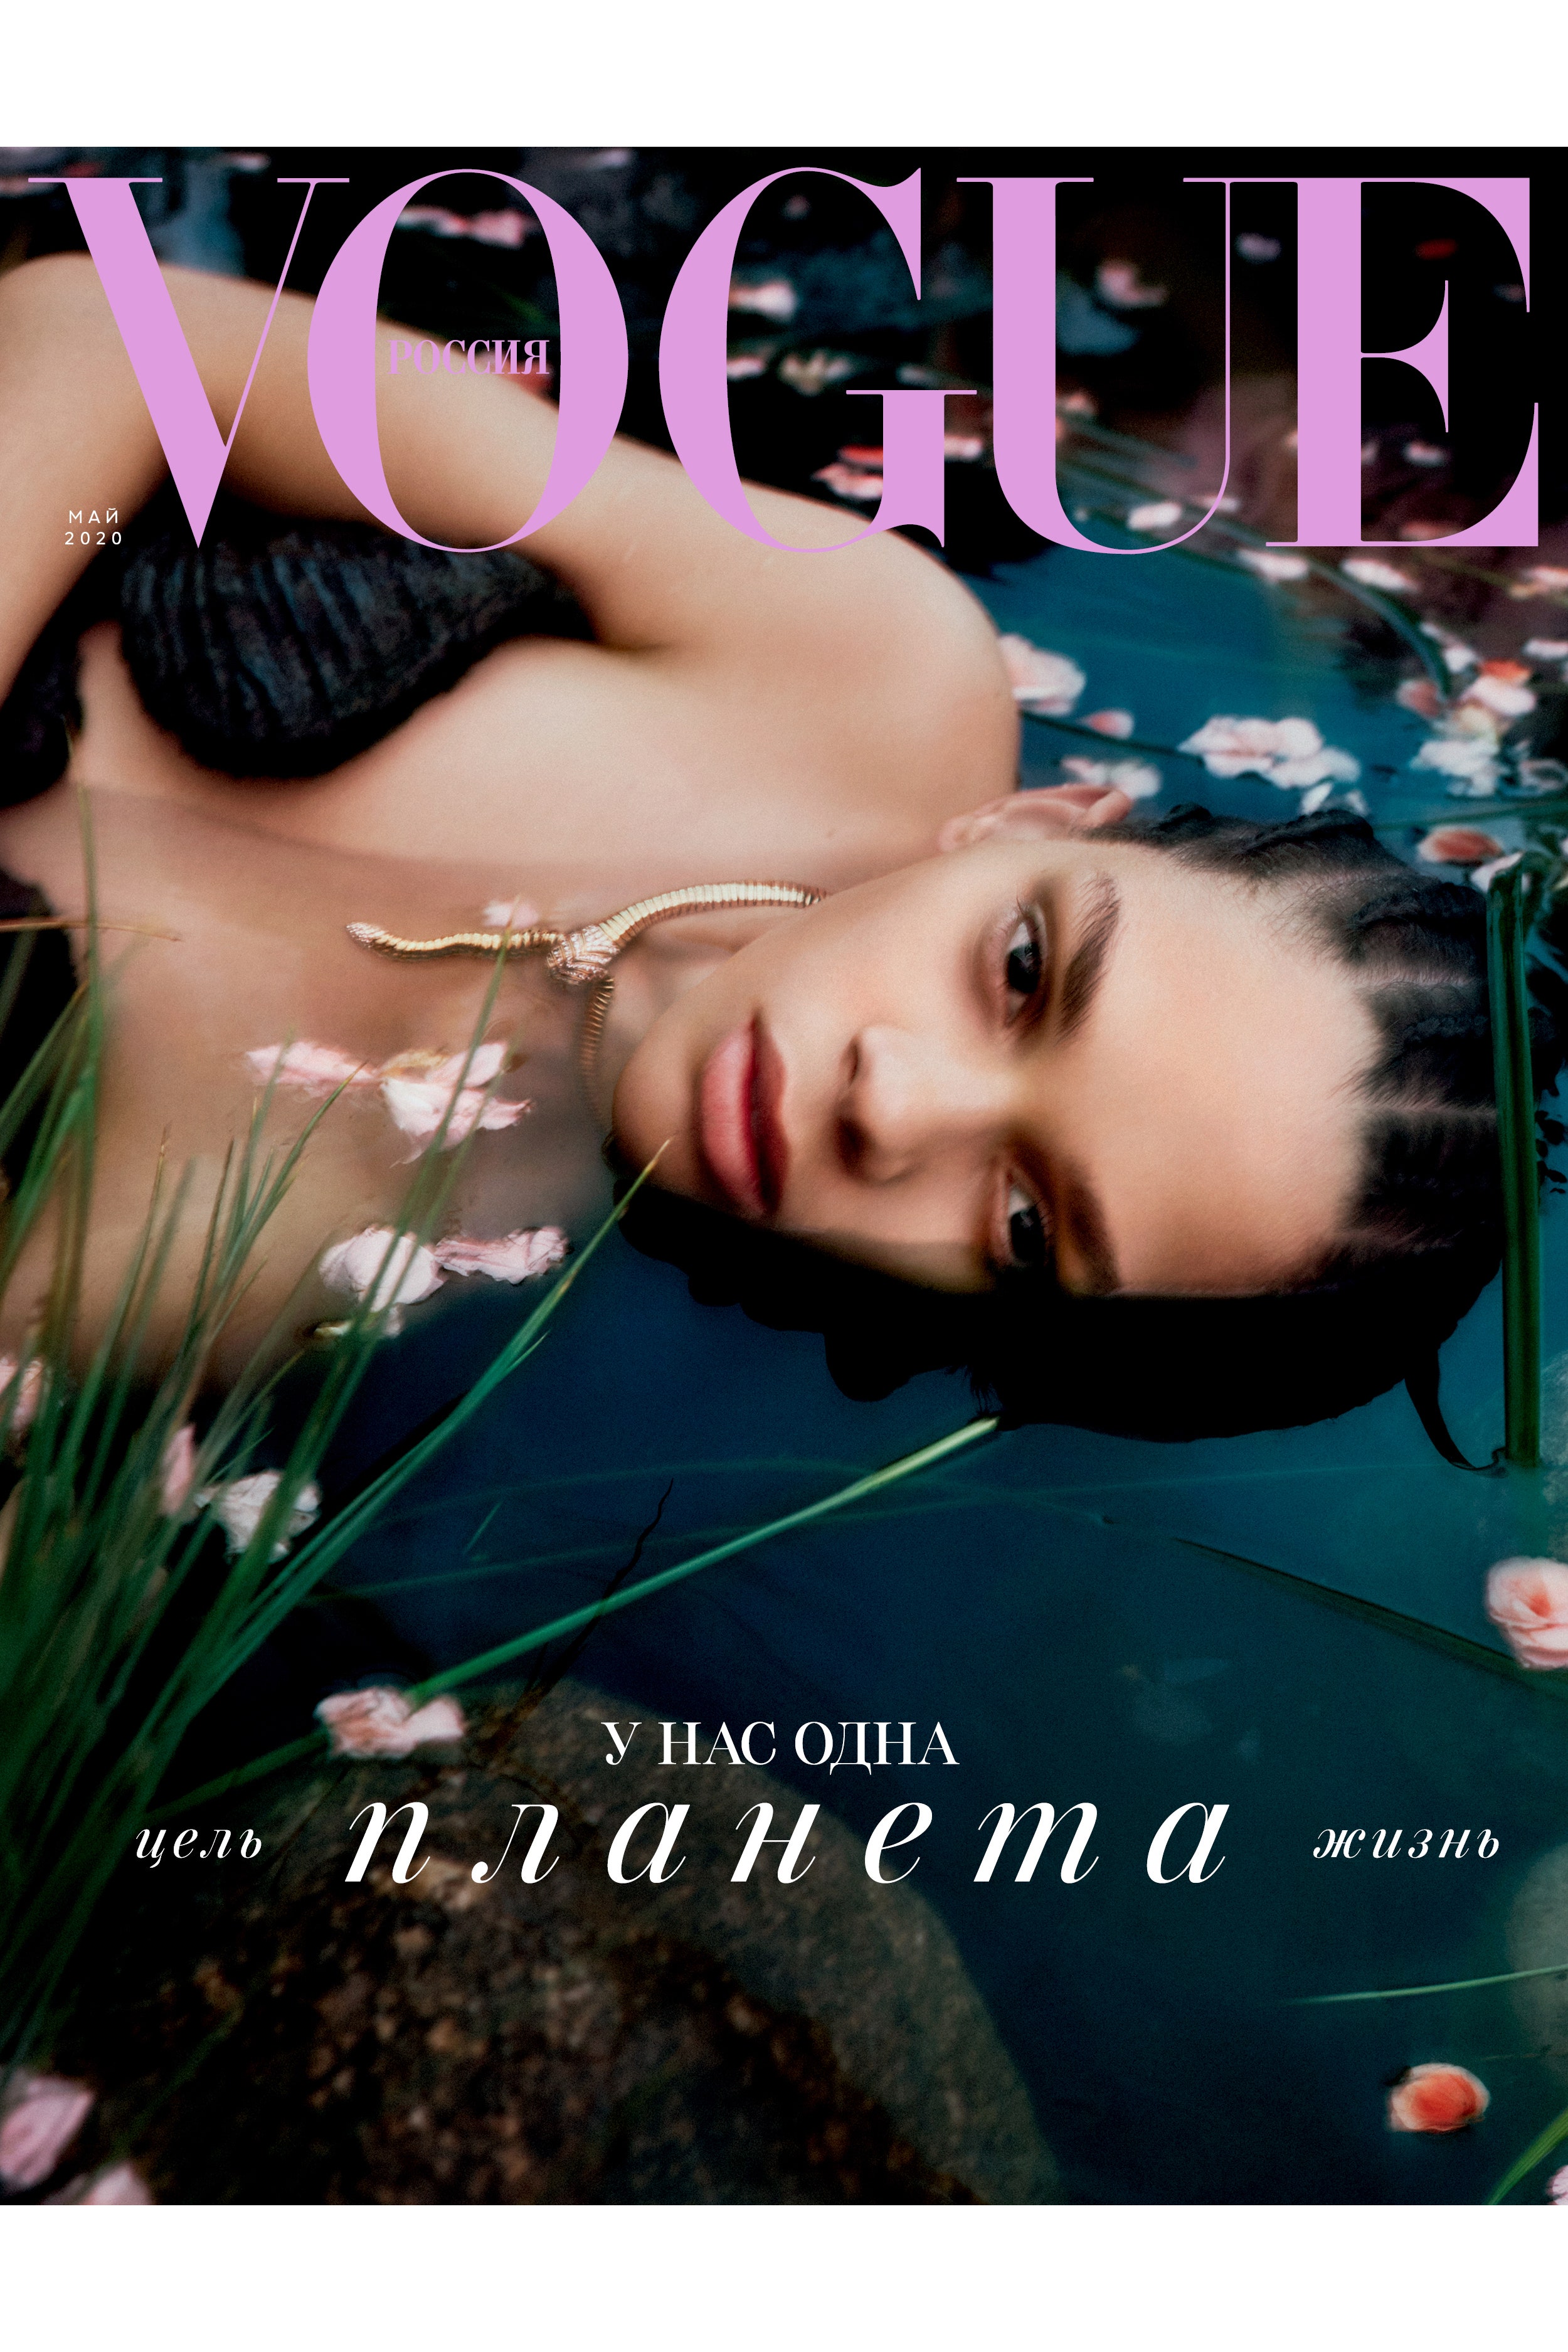 Маша Федорова о майском номере Vogue